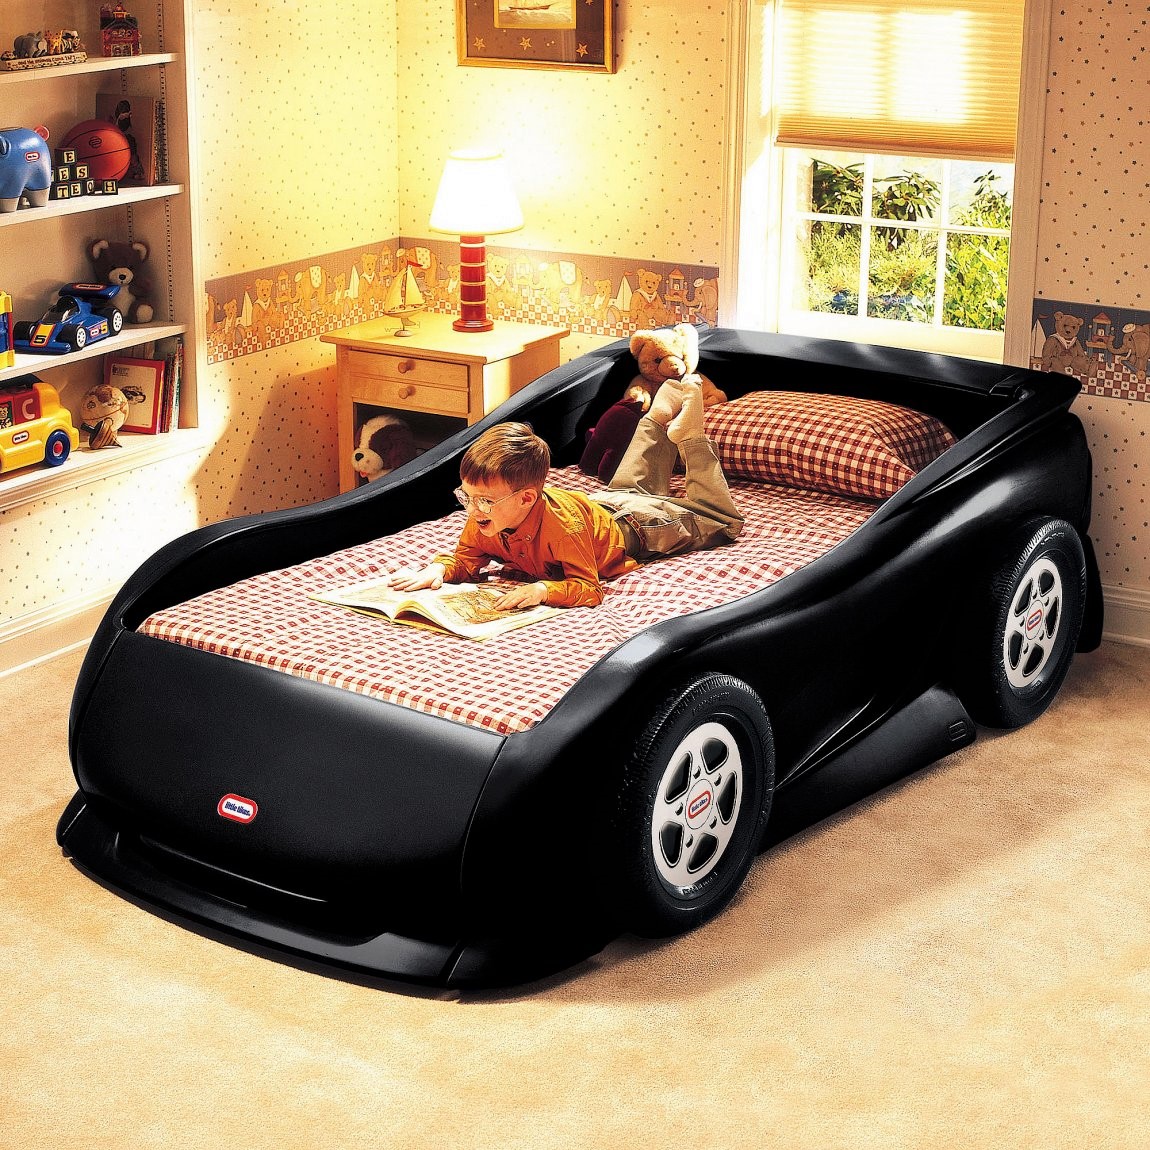 Детские кровати машины - купить кровать в форме машины от производителя «Futuka»